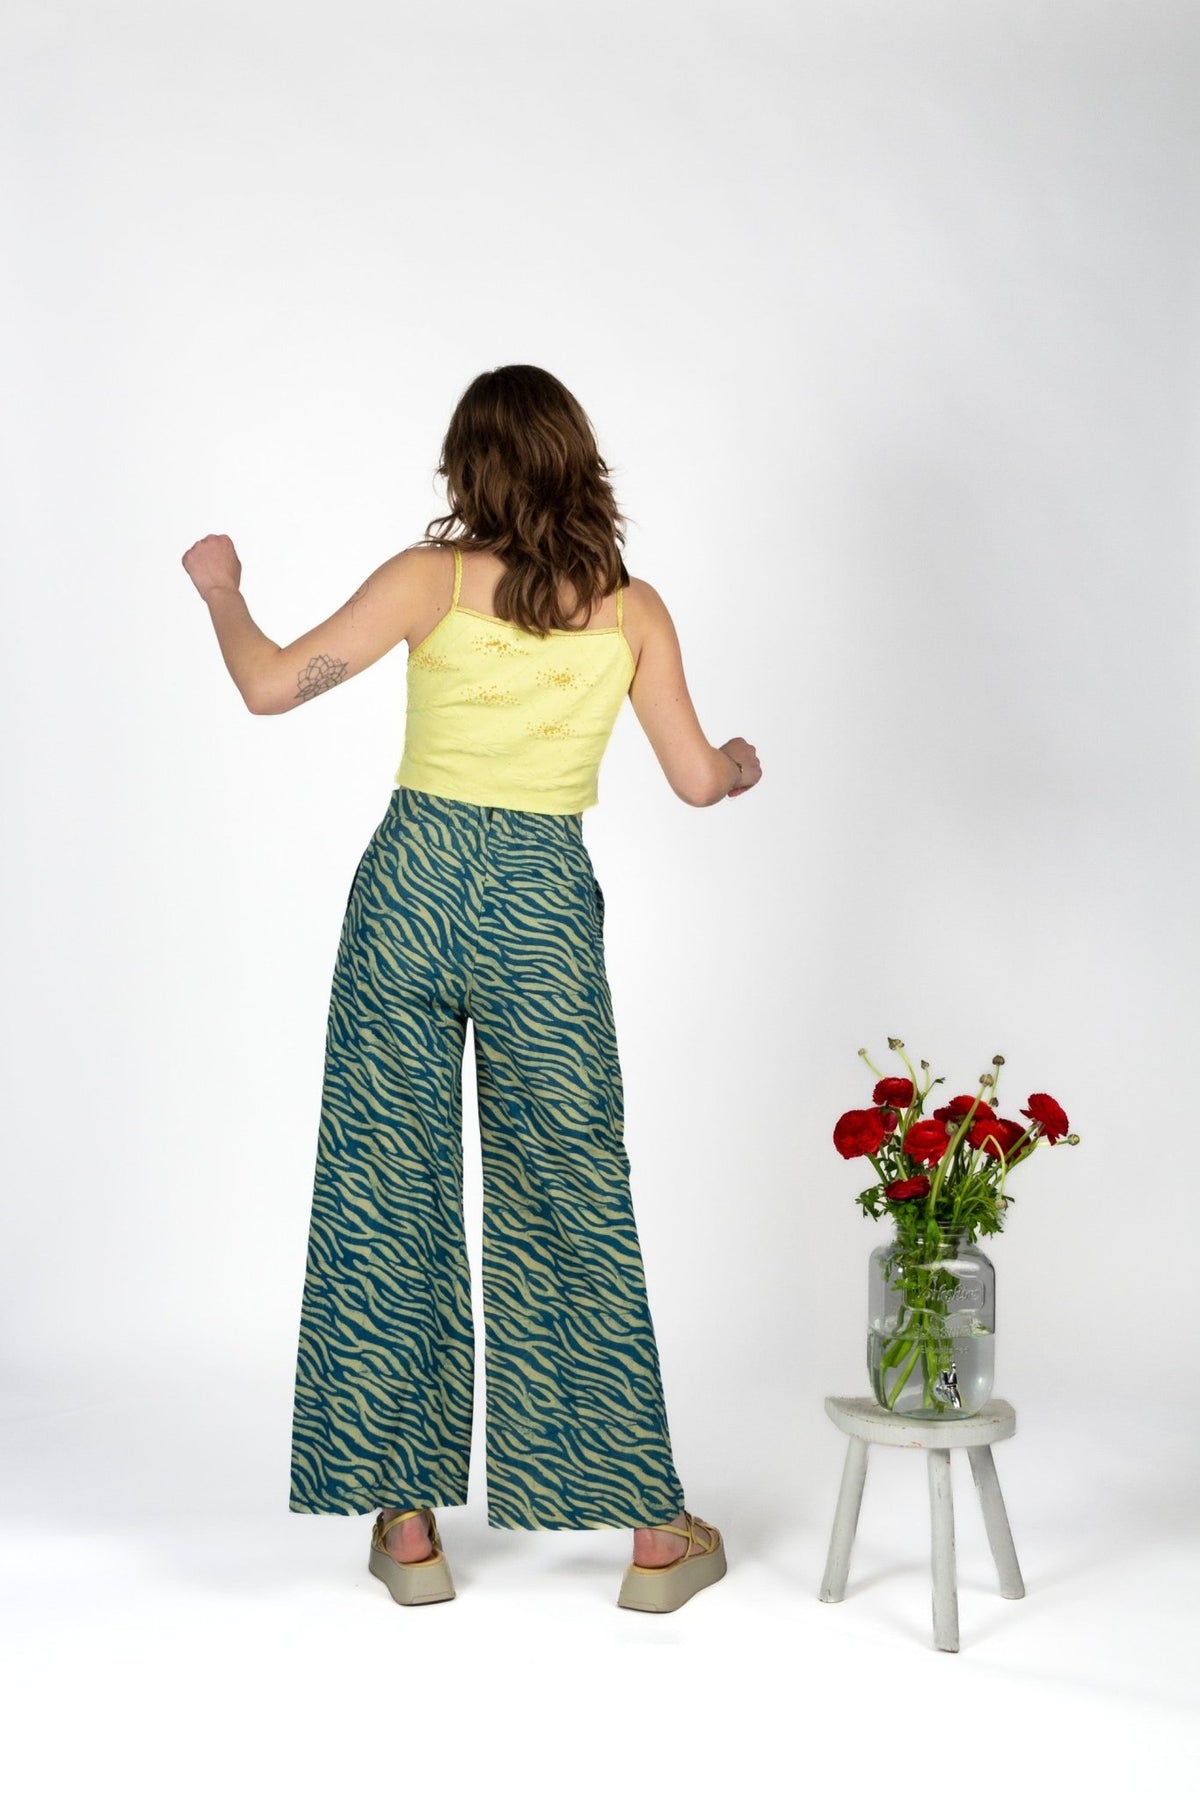 Pantalon SAGARA - Coton bio - Imprimé Nadee - Azaadi, la mode responsable accessible